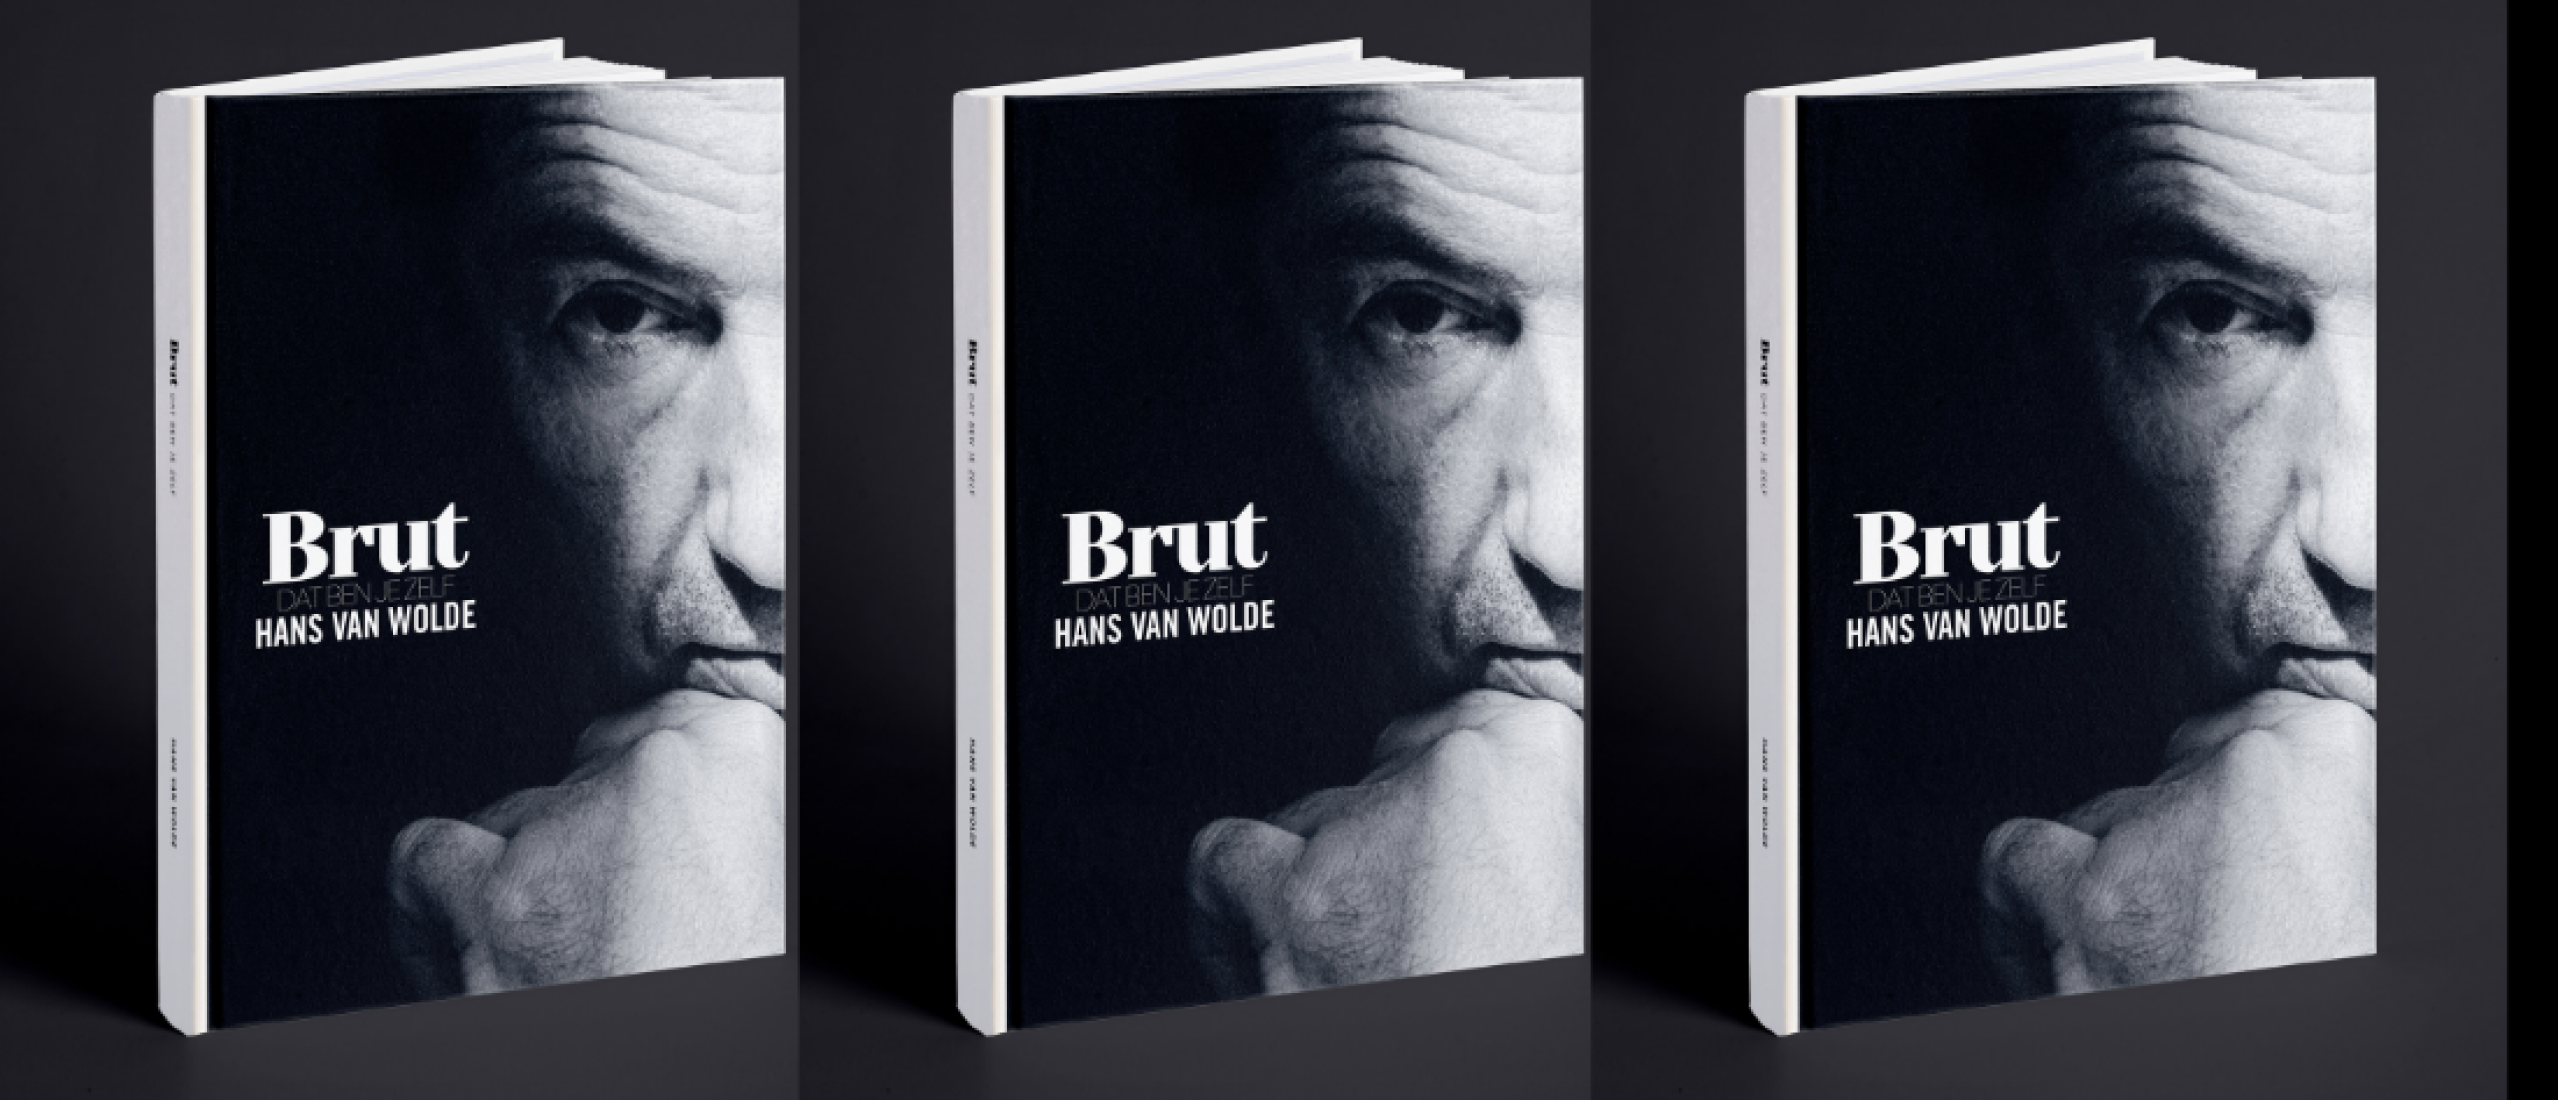 Sterrenchef Hans van Wolde lanceert boek over Brut172